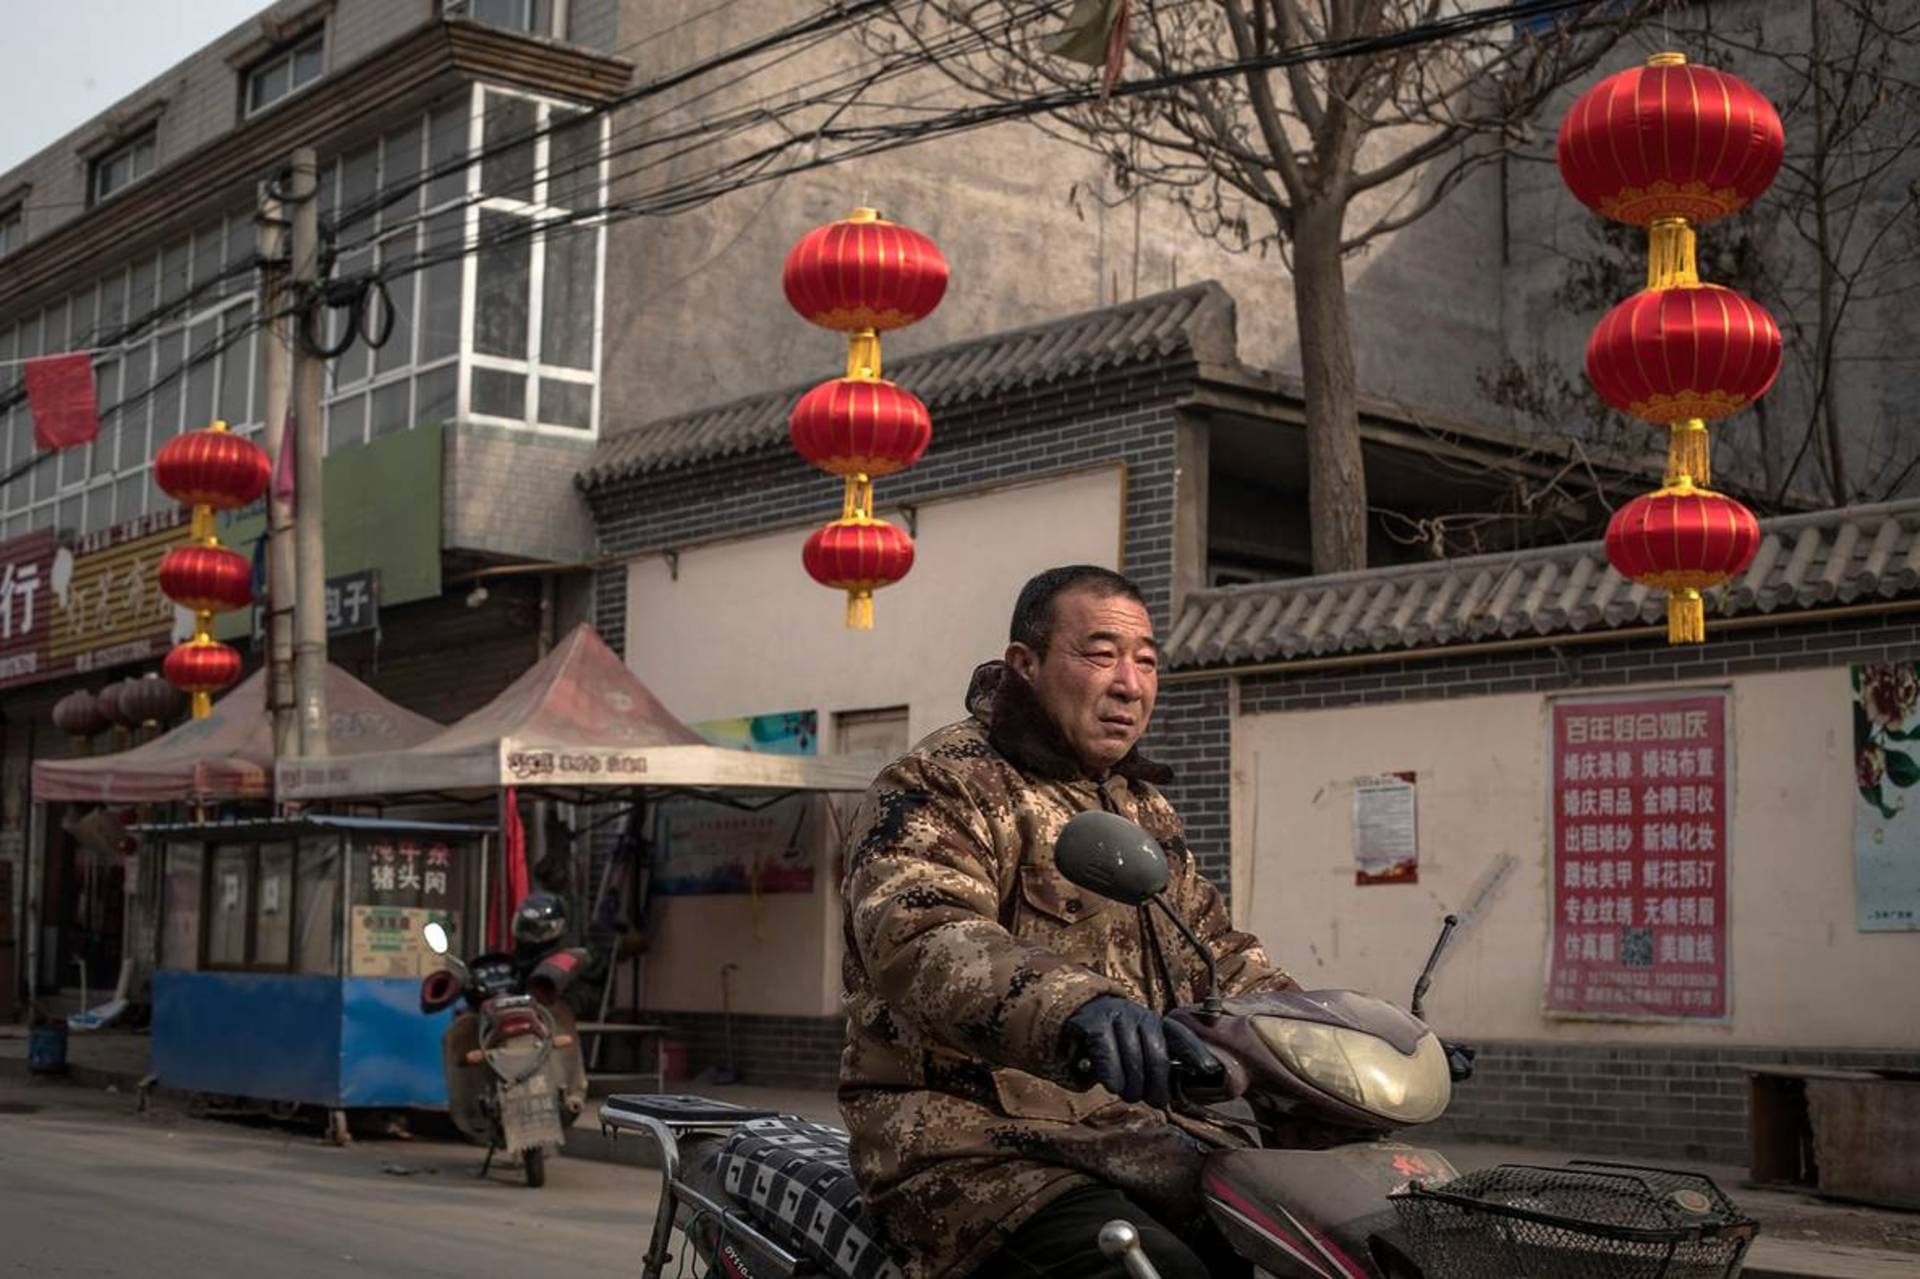 Фабрика красных фонарей: в Китае готовятся к Новому году 